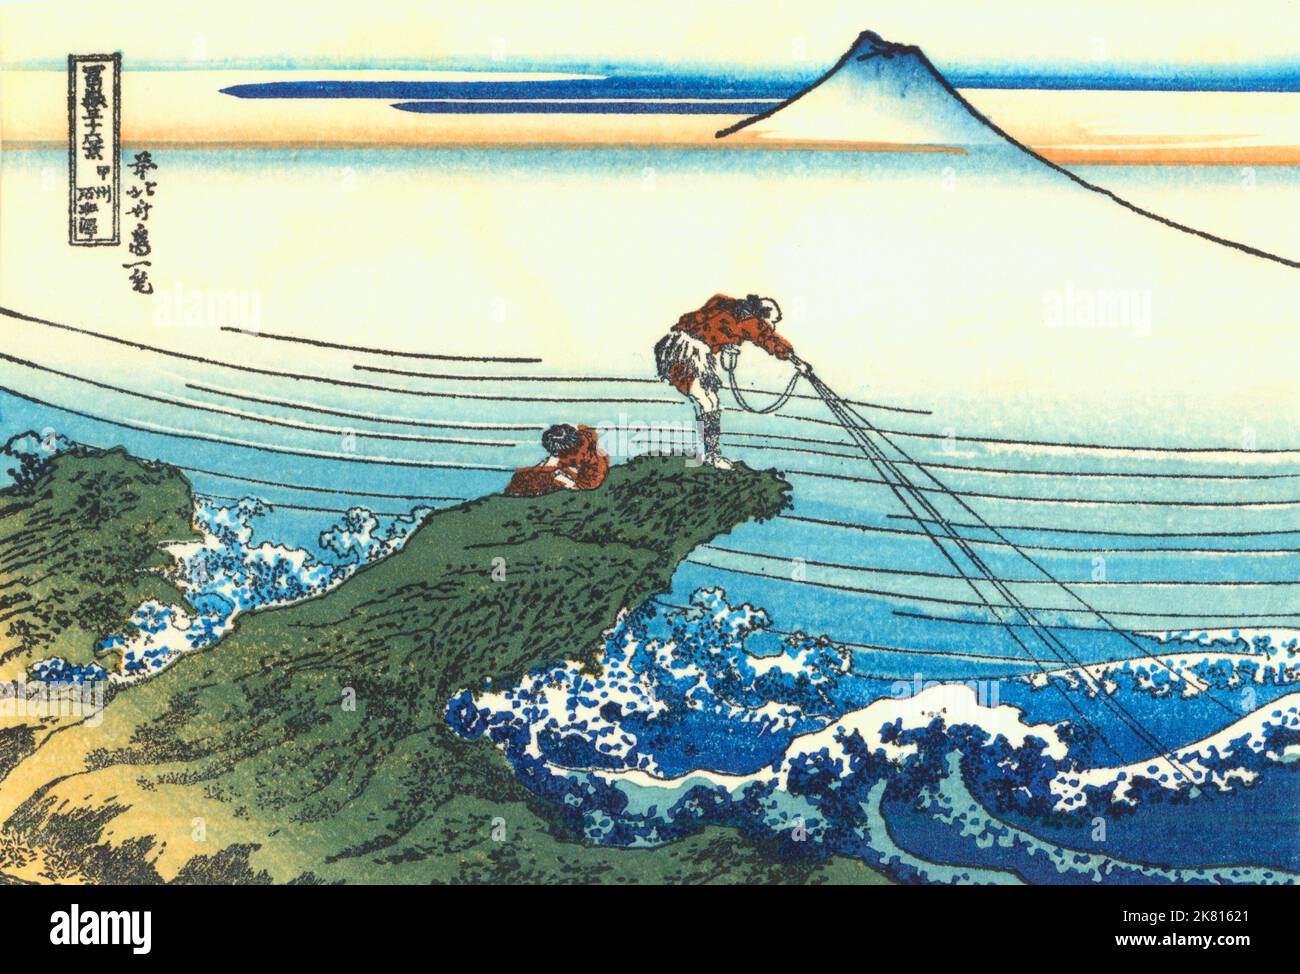 Japan: ‘Kajikazawa in der Provinz Kai’. Ukiyo-e Holzschnitt aus der Serie ‘36 Ansichten des Fuji’ von Katsushika Hokusai (31. Oktober 1760 - 10. Mai 1849), c. 1830. ‘36 Views of Mount Fuji’ ist eine ‘„Sukiyo-e“-Serie großer Holzschnitte der Künstlerin Katsushika Hokusai. Die Serie zeigt den Fuji in unterschiedlichen Jahreszeiten und Wetterbedingungen an verschiedenen Orten und Entfernungen. Es besteht tatsächlich aus 46 Drucken, die zwischen 1826 und 1833 entstanden sind. Die ersten 36 wurden in die Originalpublikation aufgenommen, und aufgrund ihrer Popularität wurden nach der Originalpublikation 10 weitere hinzugefügt. Stockfoto